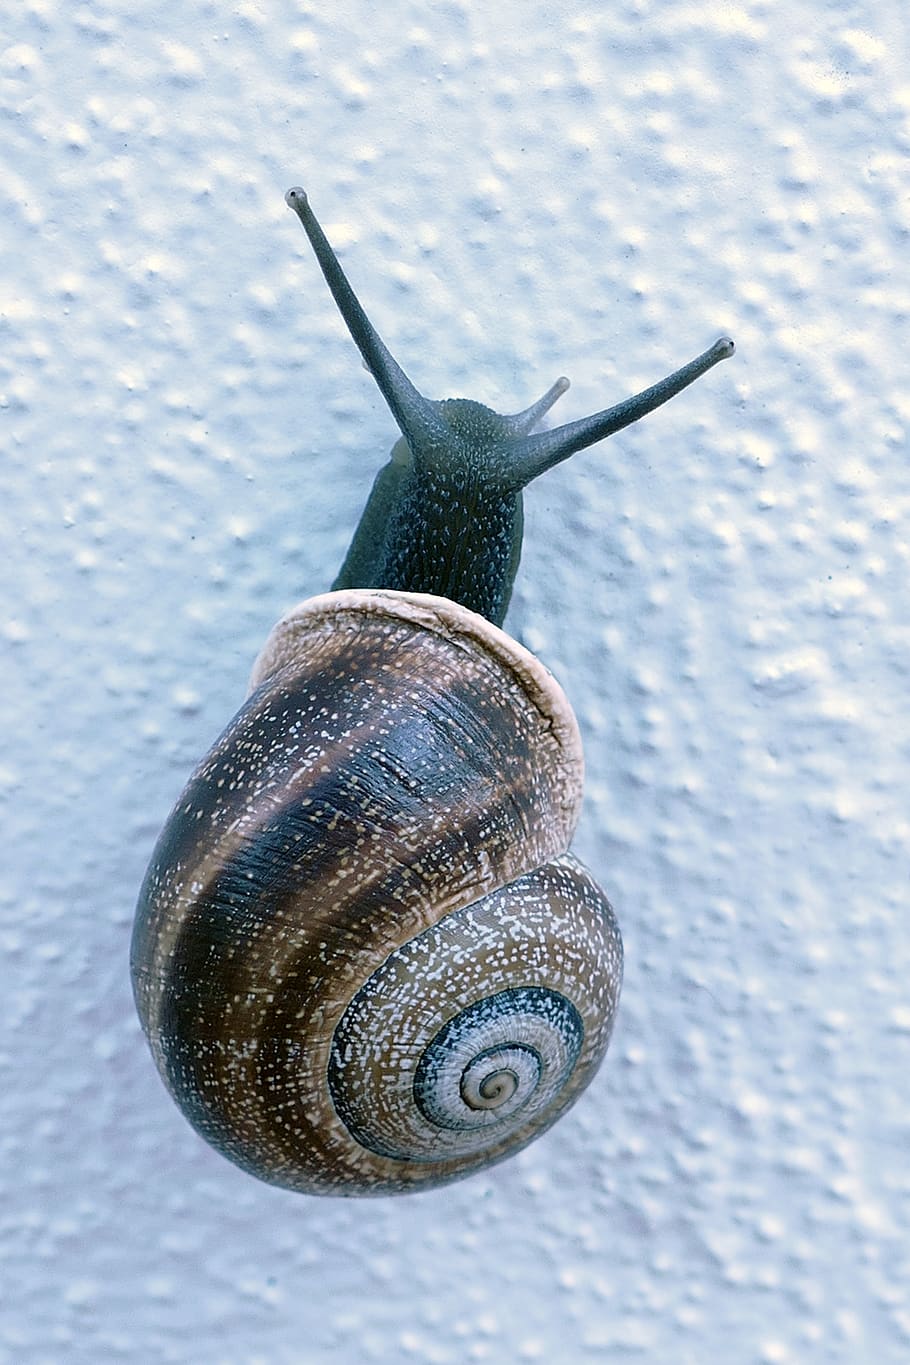 snail, mollusc, huisjesslak, cochlea, feeler, slow, slowly, HD wallpaper